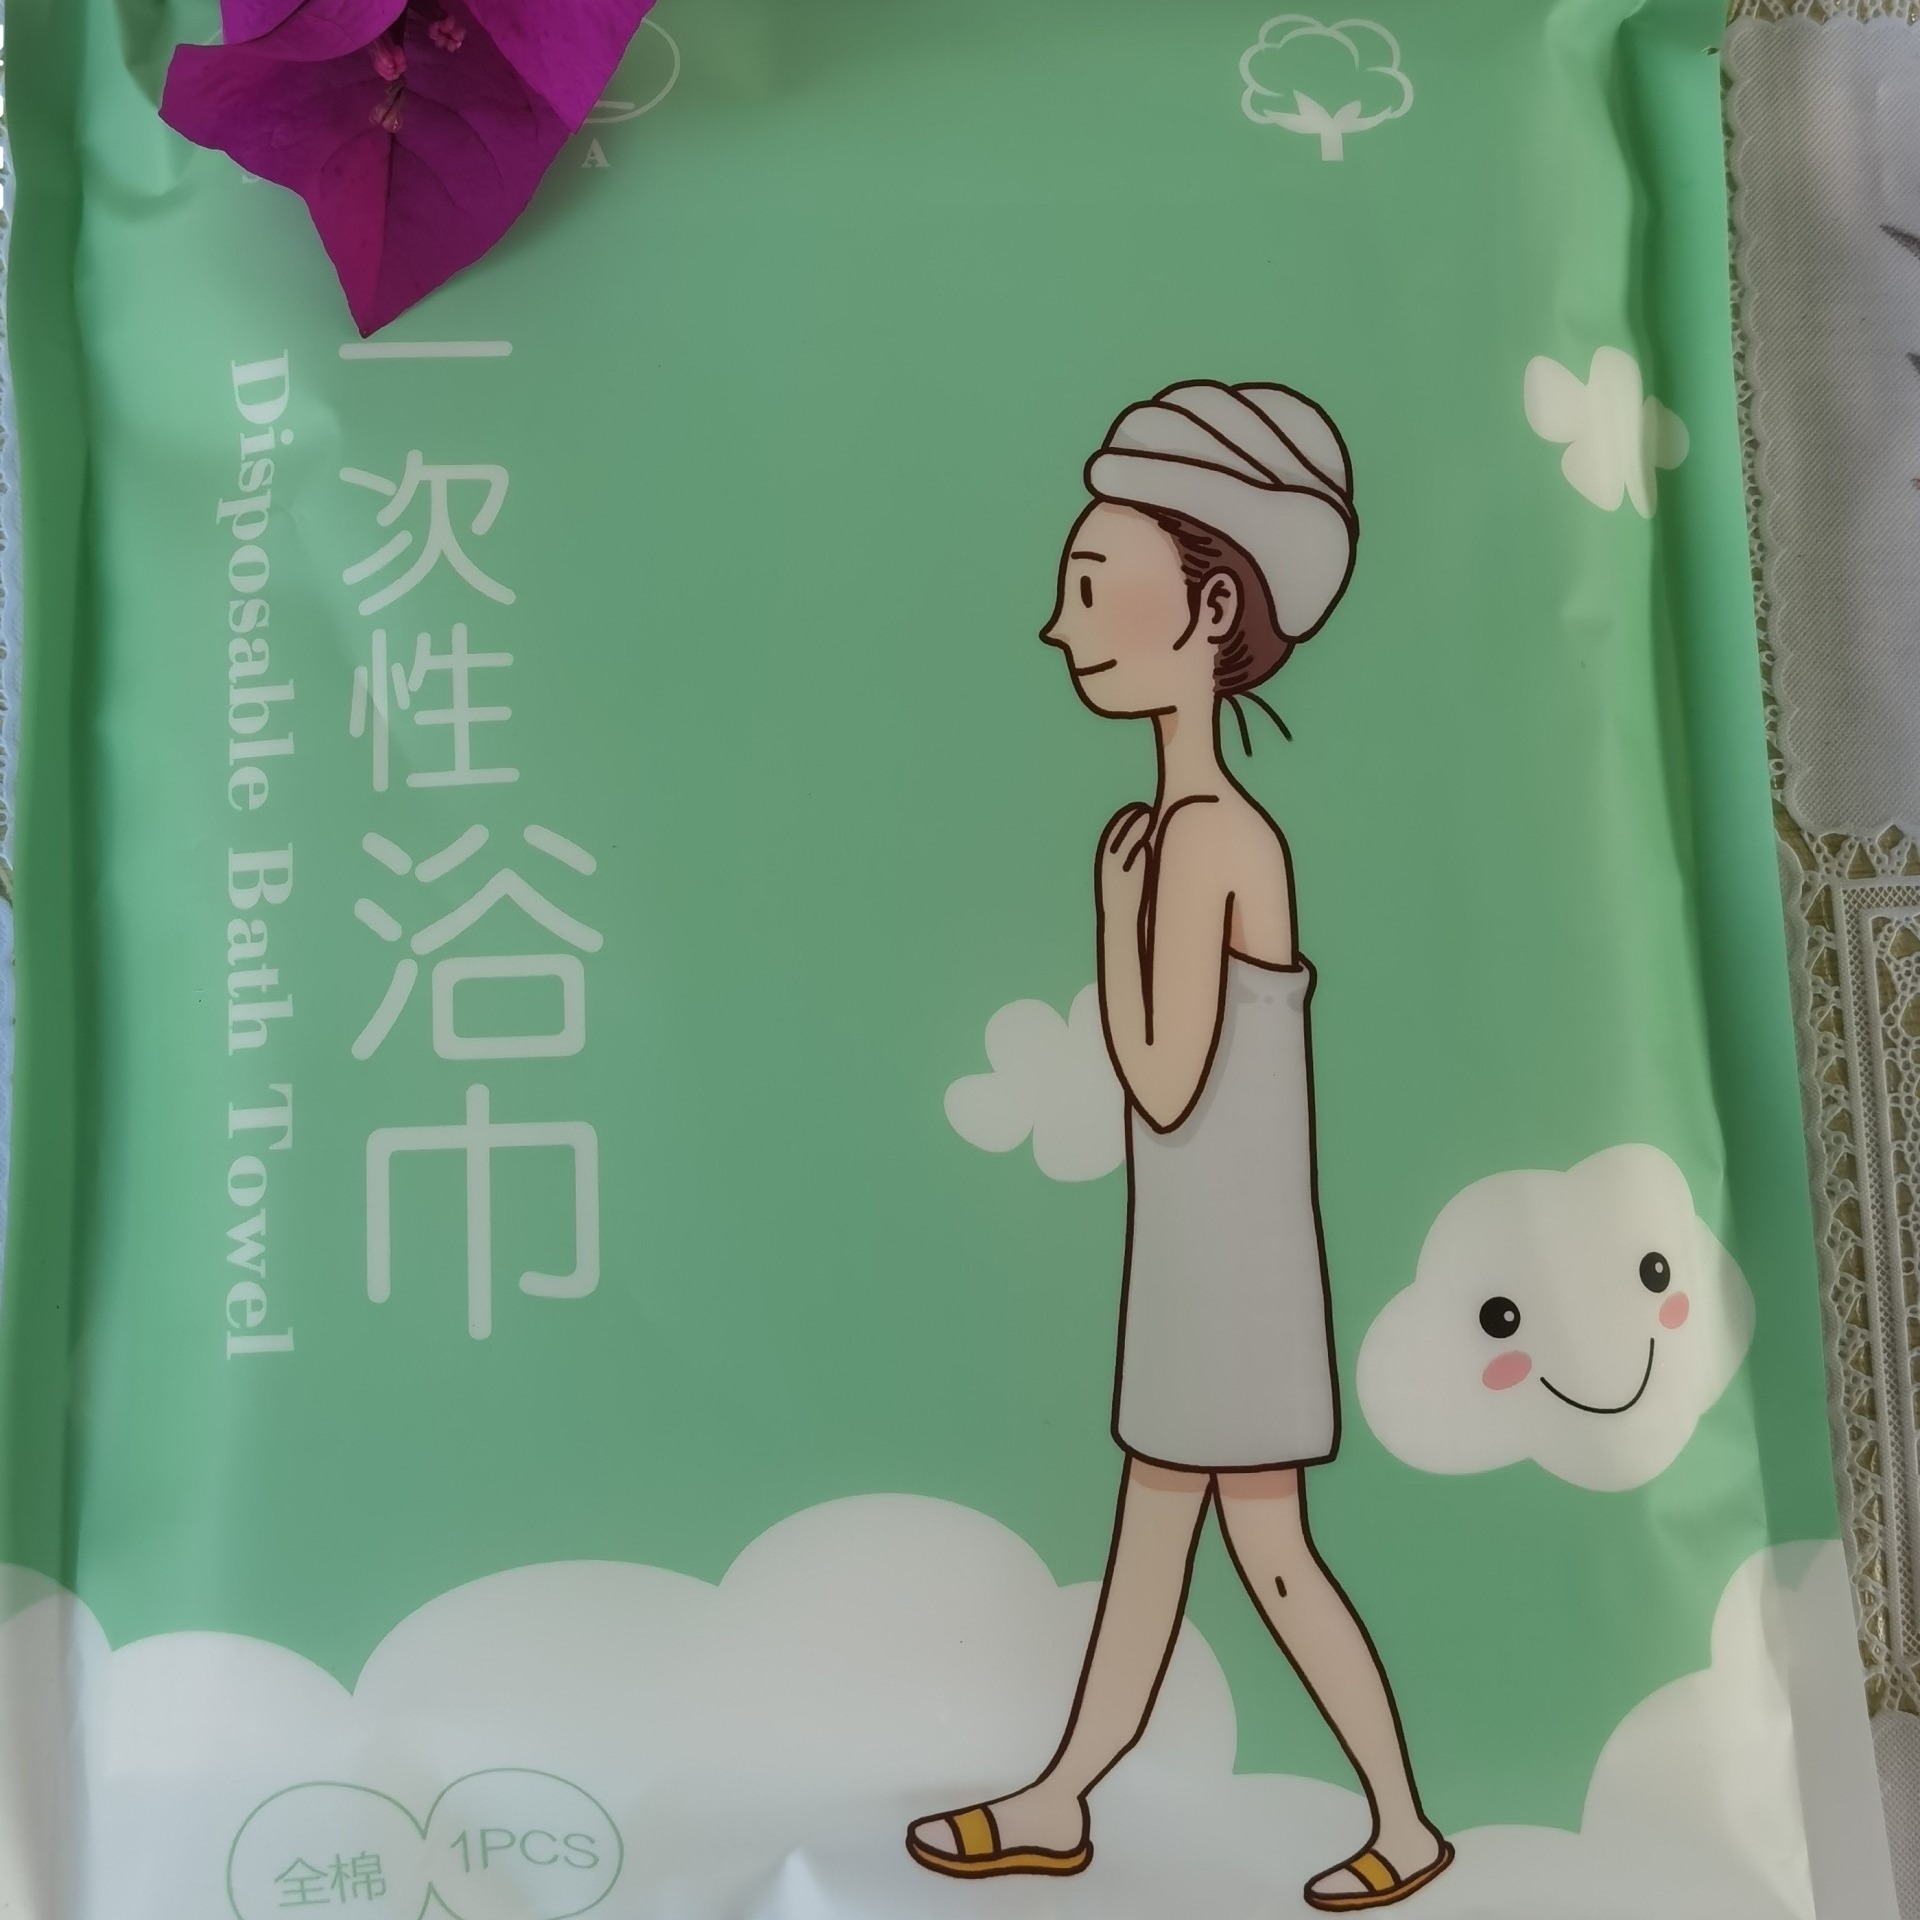 一次性浴巾  朗生浴巾  旅行浴巾 便携式浴巾LSM017  生产厂家图片